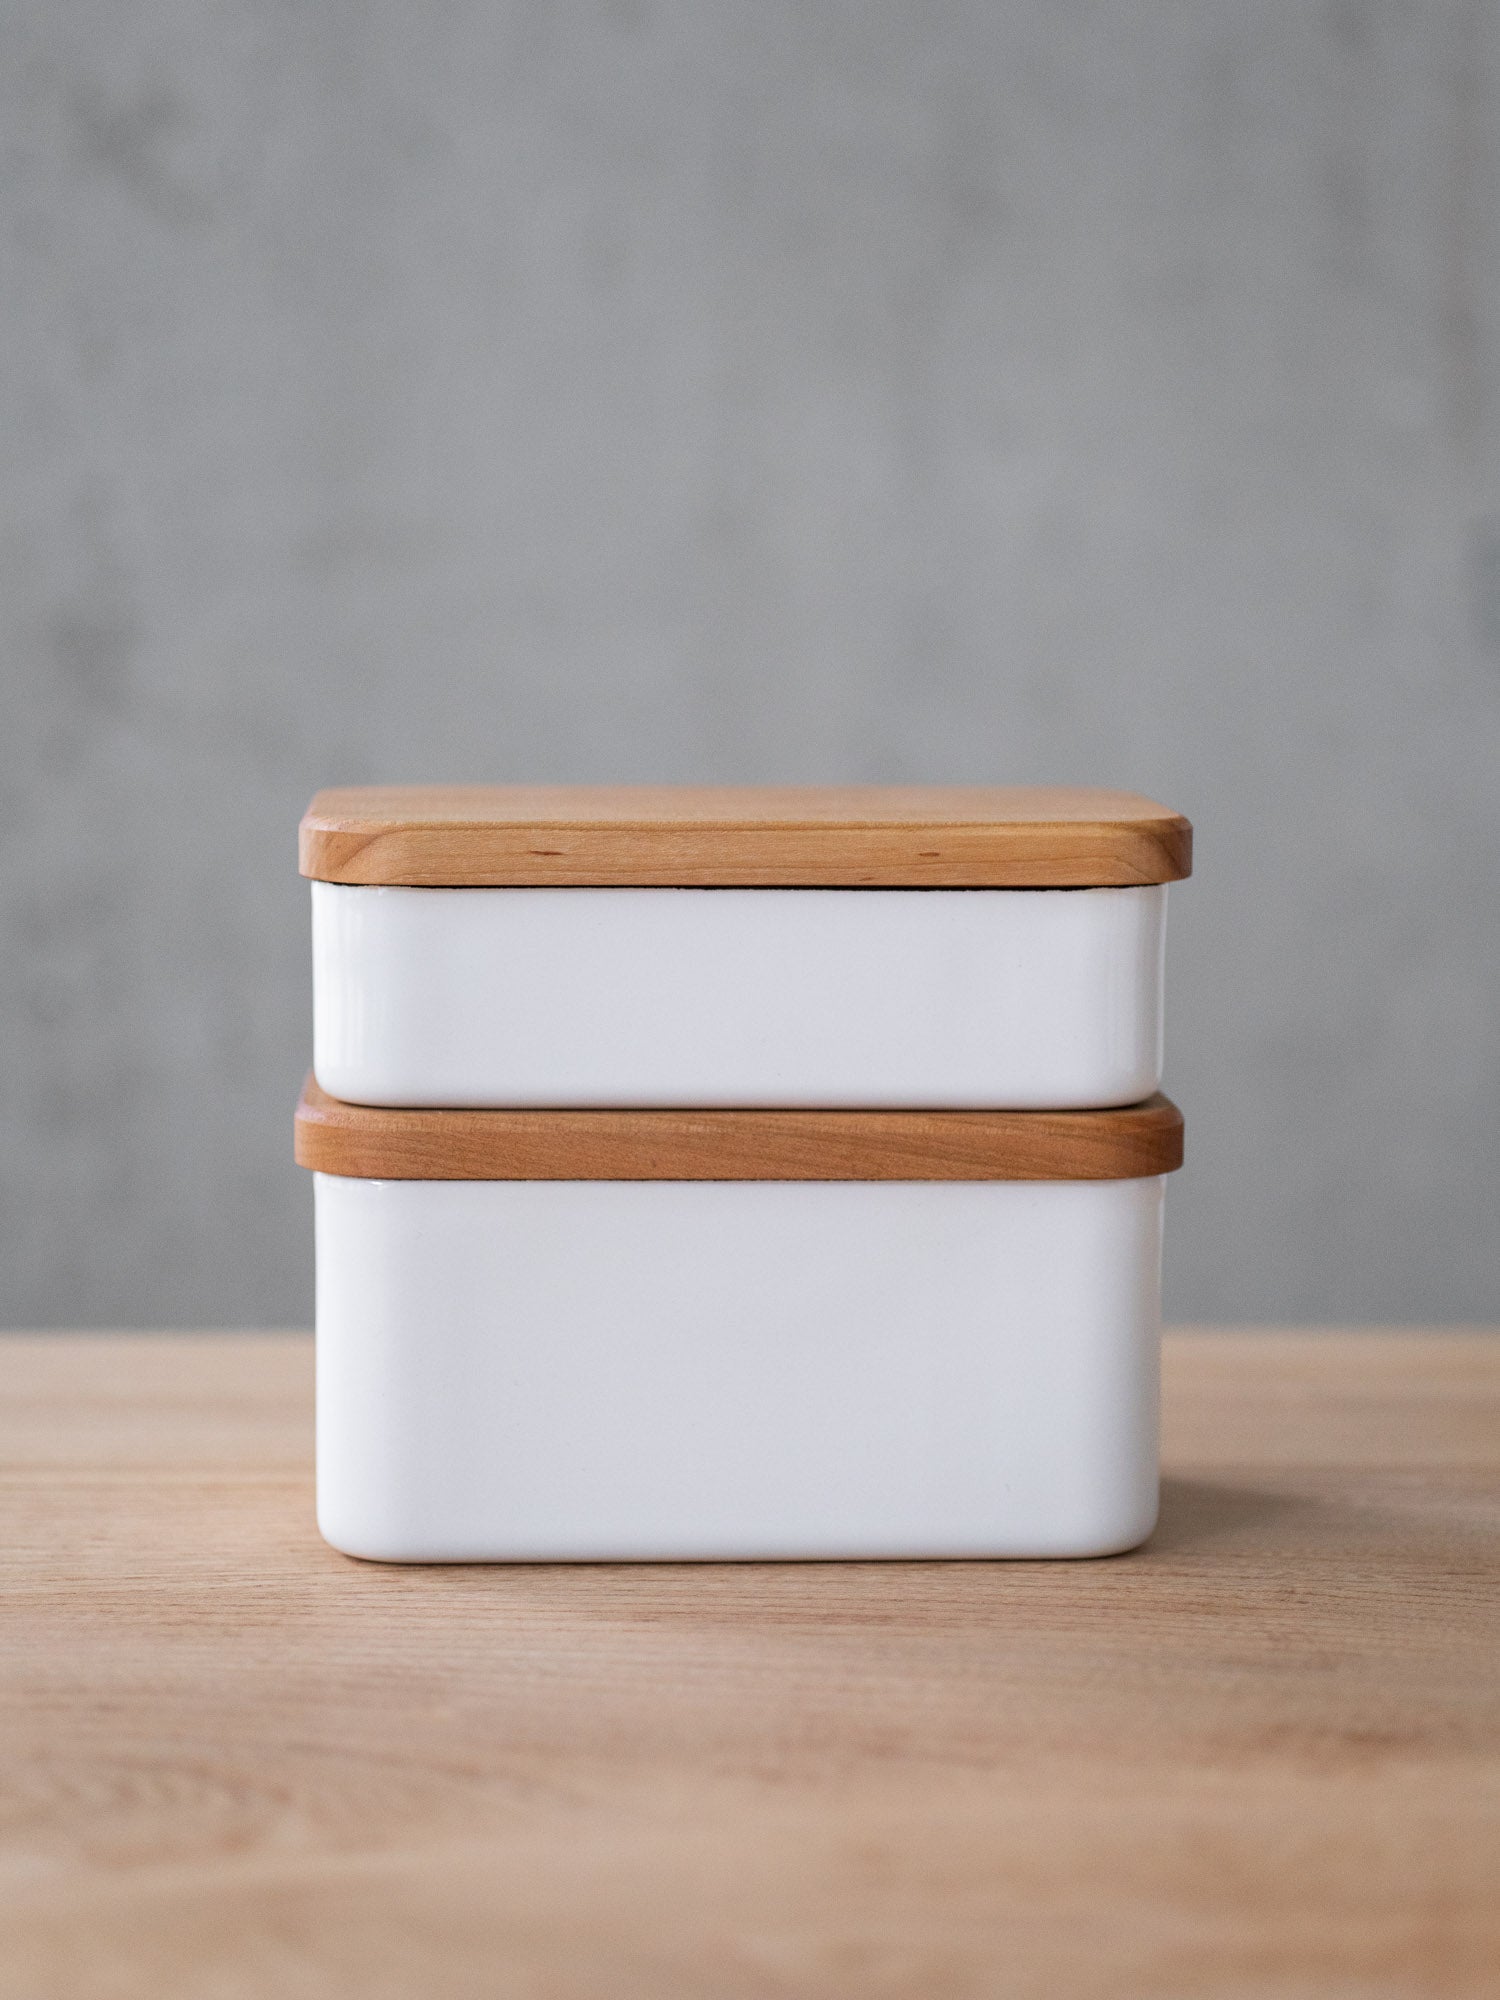 https://cdn.shopify.com/s/files/1/0782/7498/6292/files/noda-horo-butter-case-white-enamel-wooden-lid-2.jpg?v=1689693335&width=1500